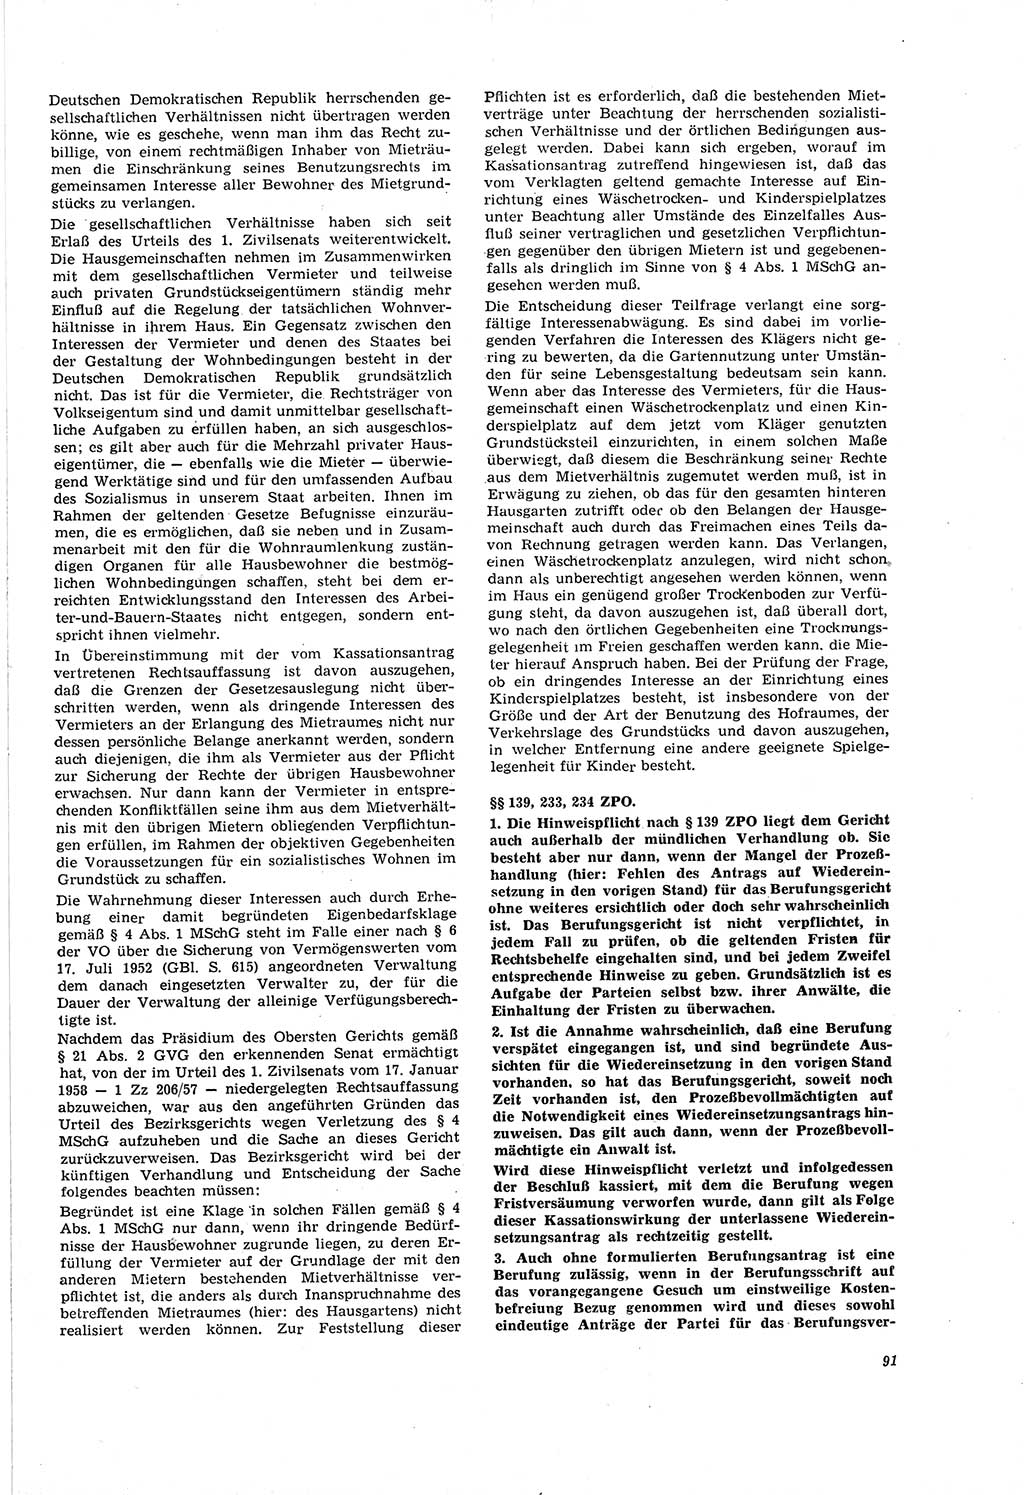 Neue Justiz (NJ), Zeitschrift für Recht und Rechtswissenschaft [Deutsche Demokratische Republik (DDR)], 20. Jahrgang 1966, Seite 91 (NJ DDR 1966, S. 91)